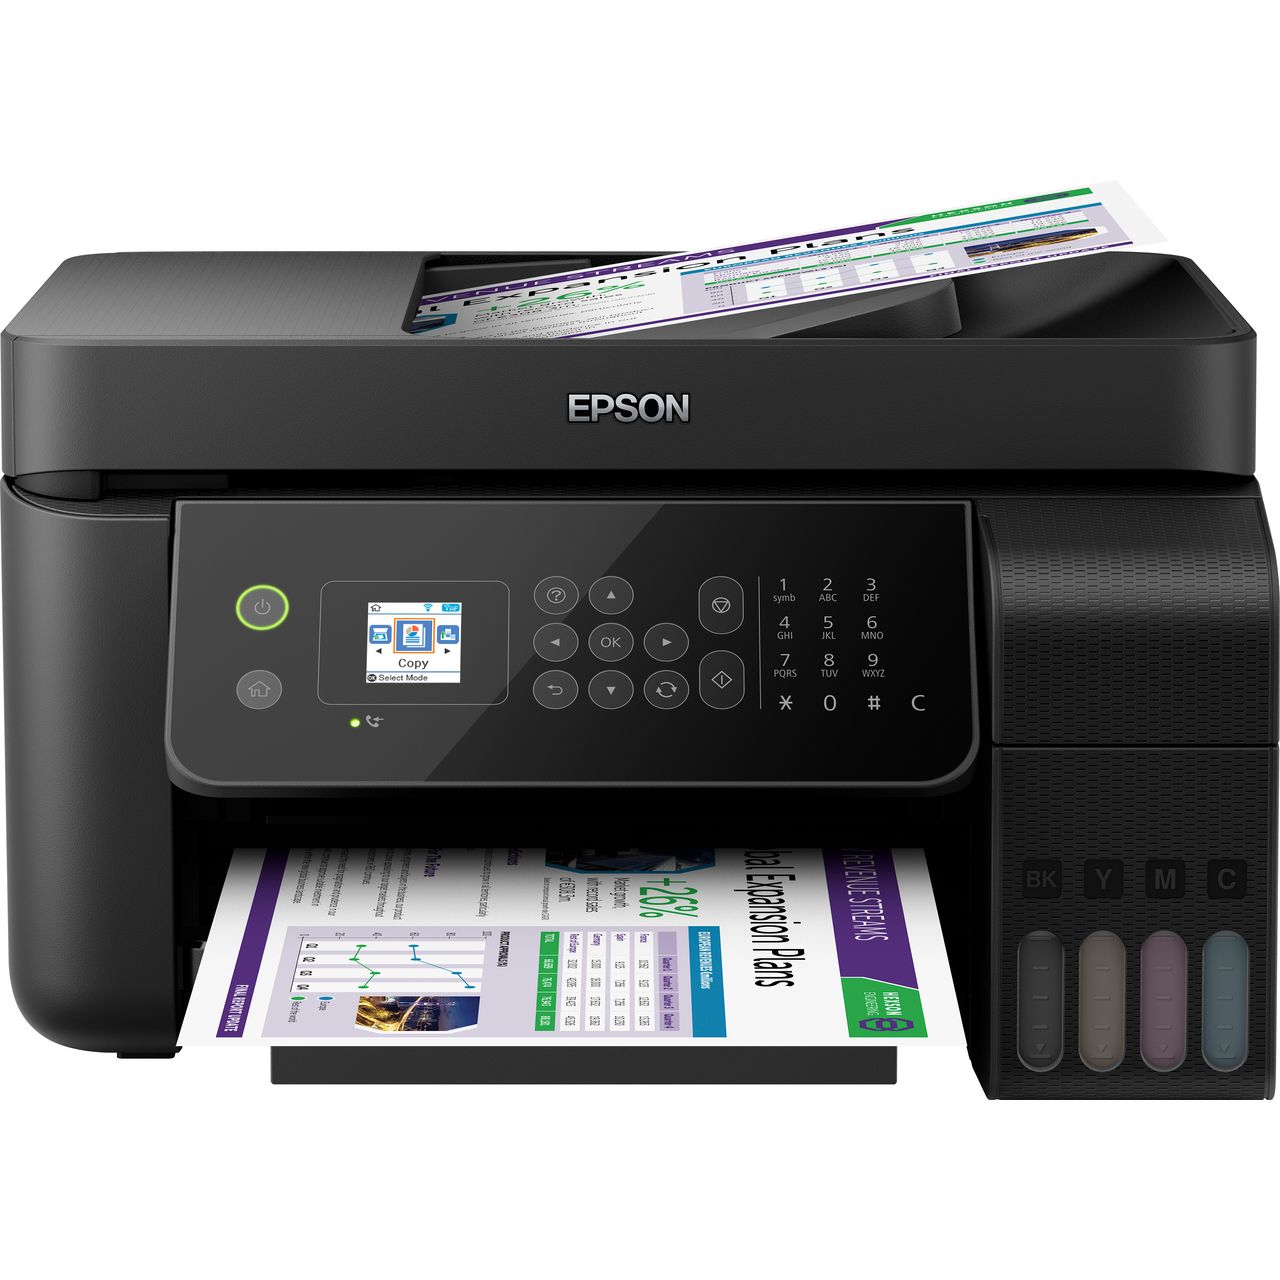 Epson EcoTank ET-4700 Inkjet Printer Review